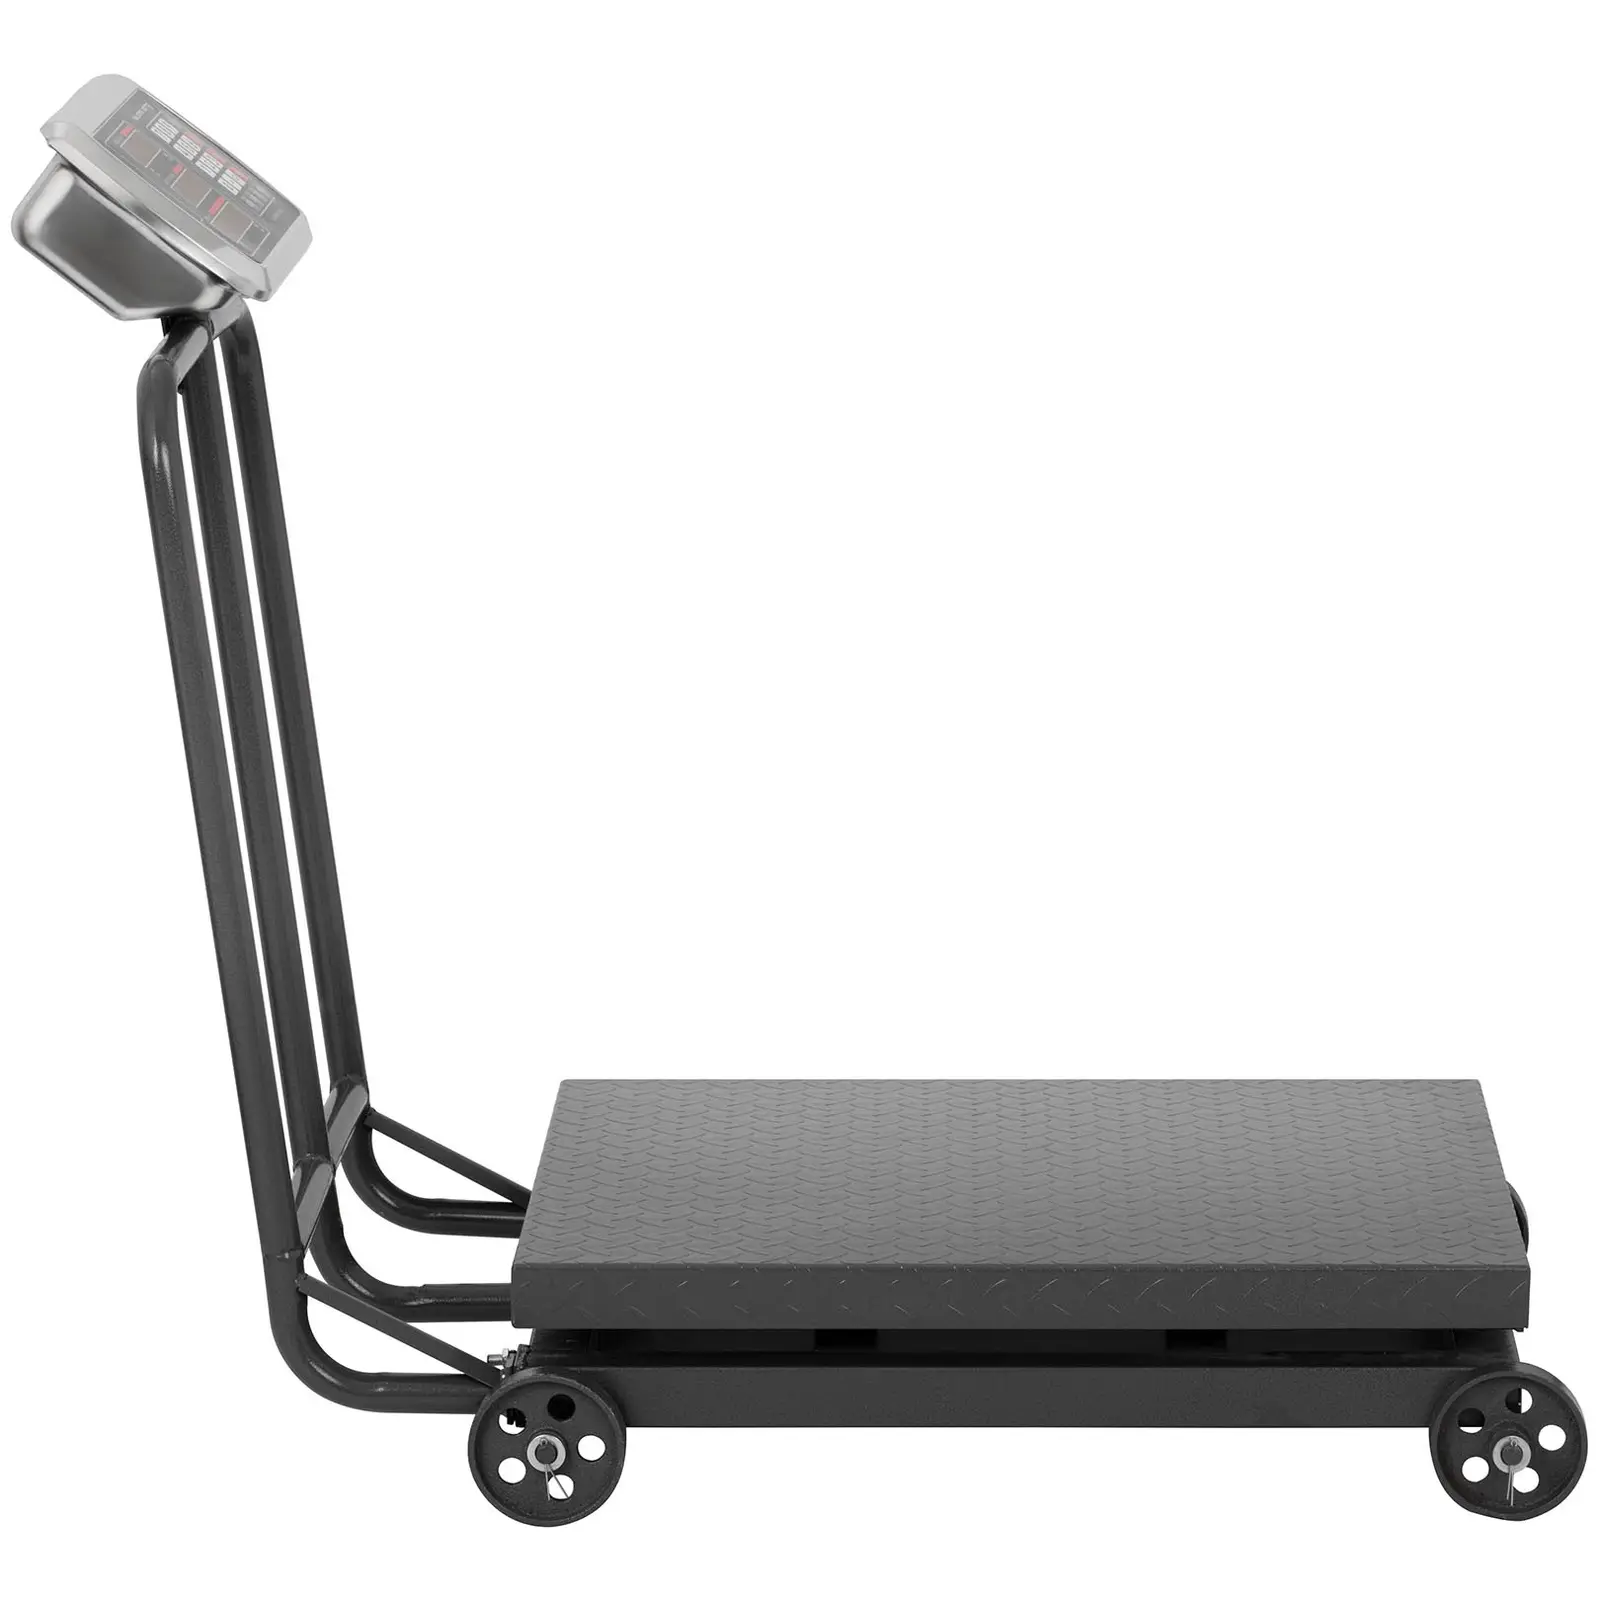 Balance plateforme mobile - 600 kg / 100 g - Afficheur LED